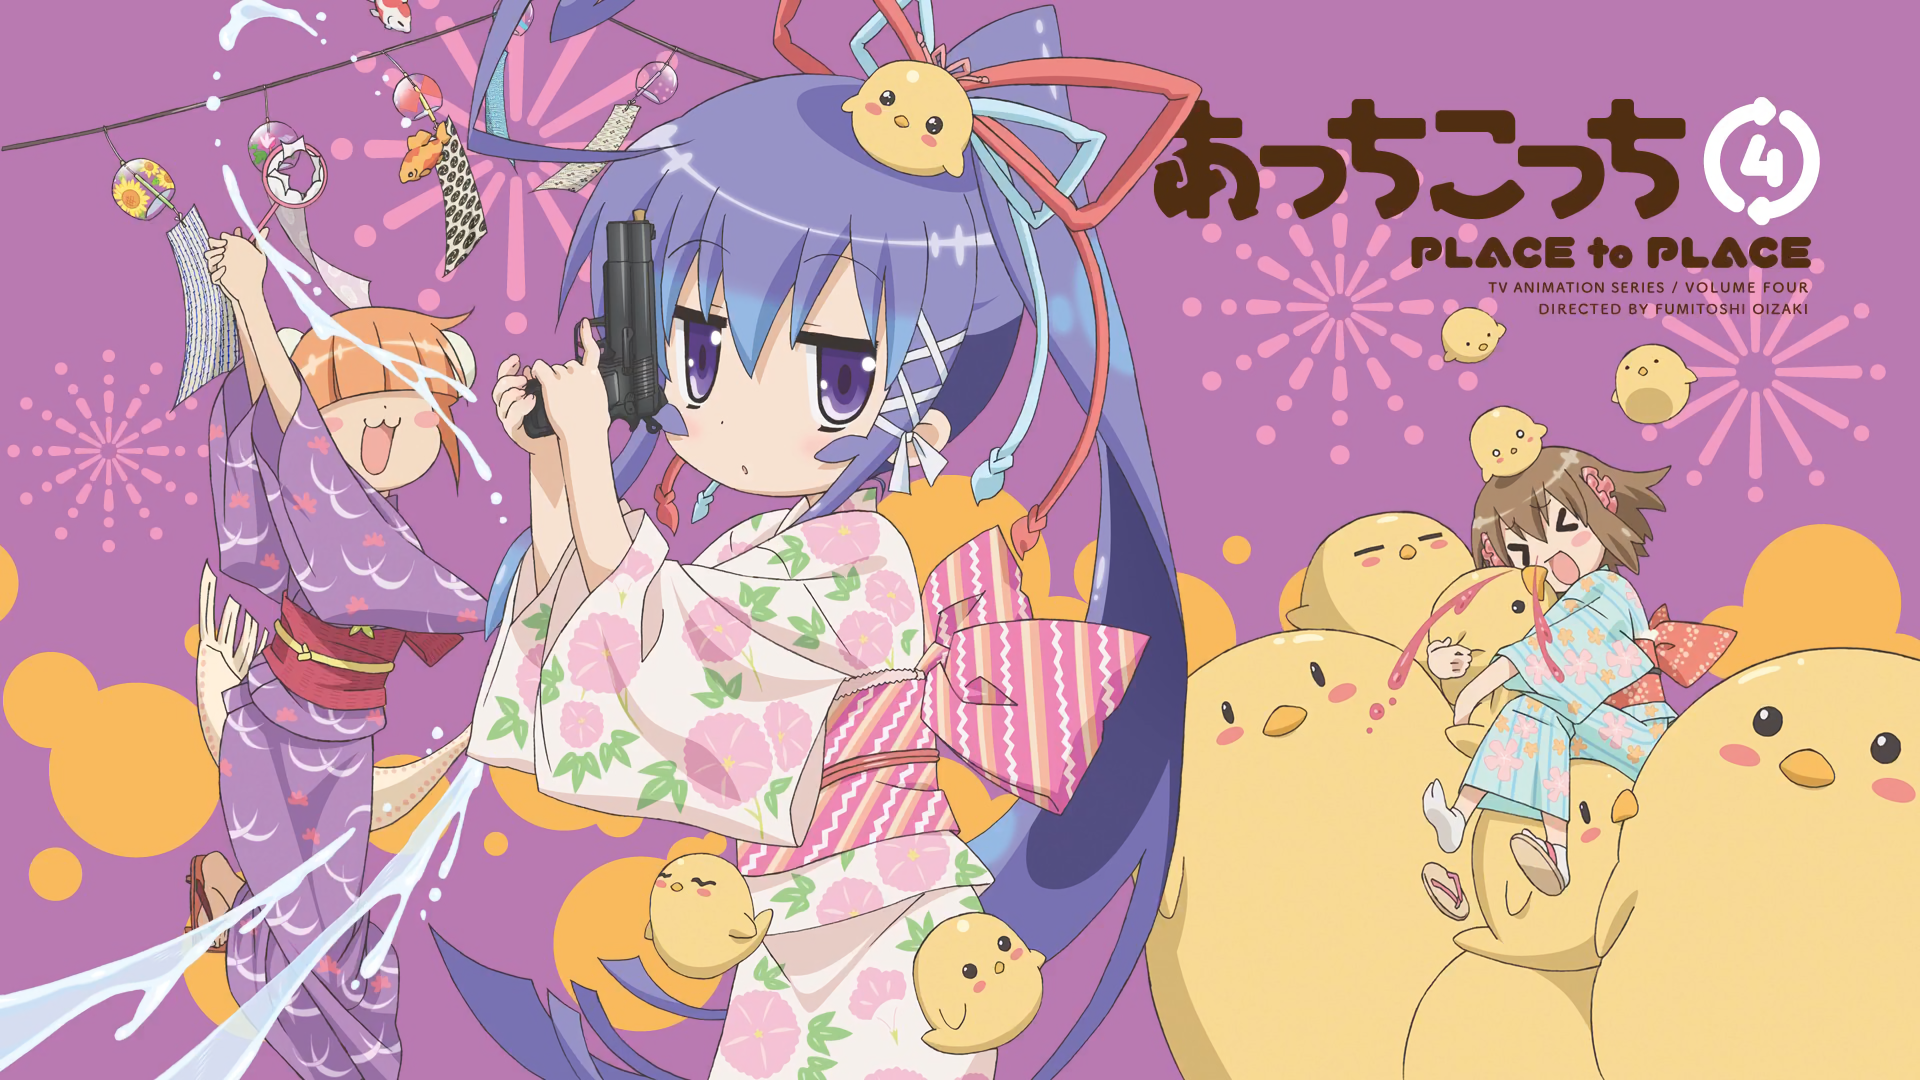 fondo de pantalla de acchi kocchi,dibujos animados,ilustración,texto,anime,dibujos animados